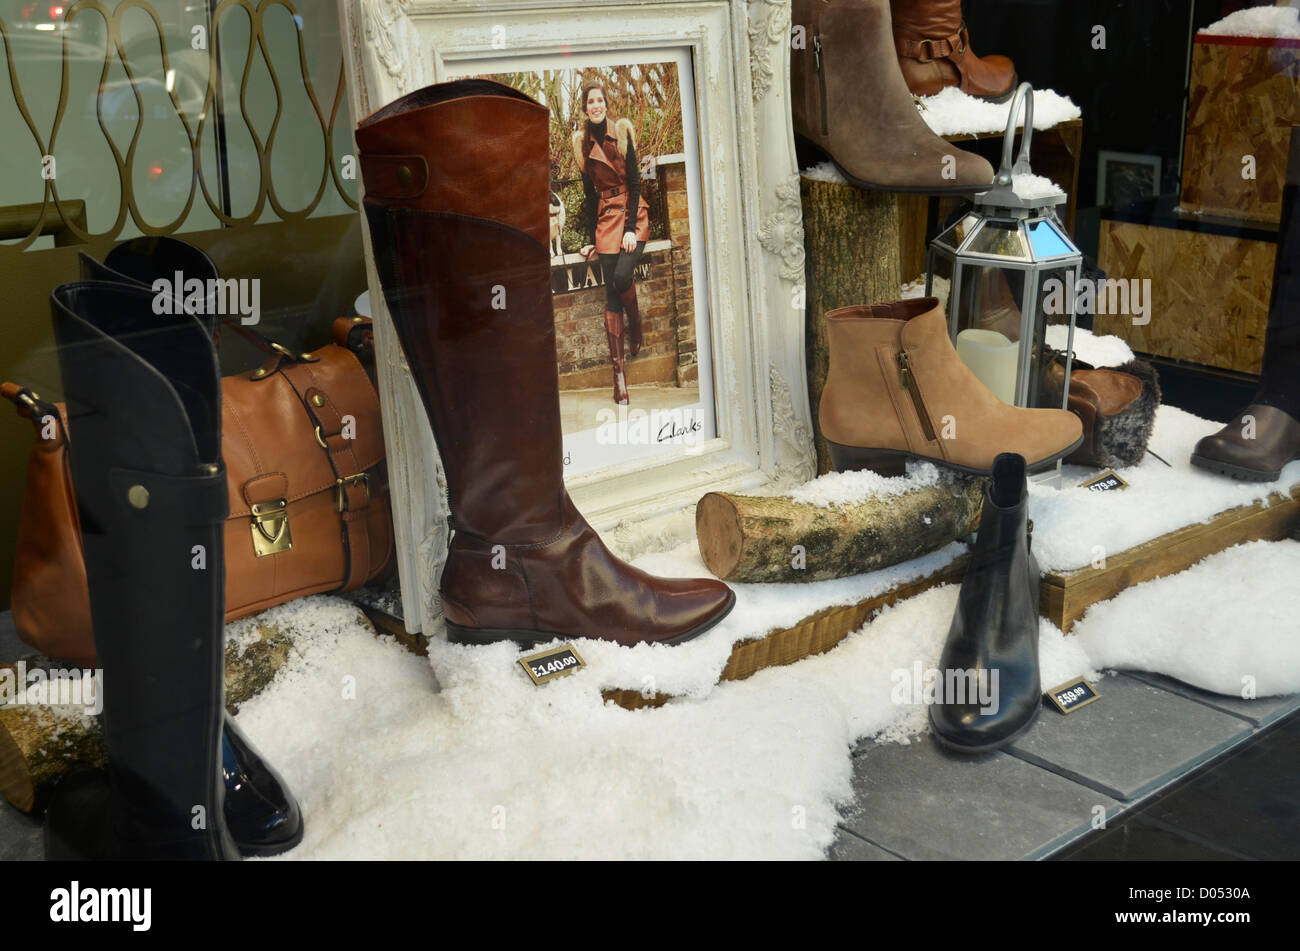 Magasin de chaussures Clarks affichage fenêtre hiver gamme de bottes et chaussures Banque D'Images